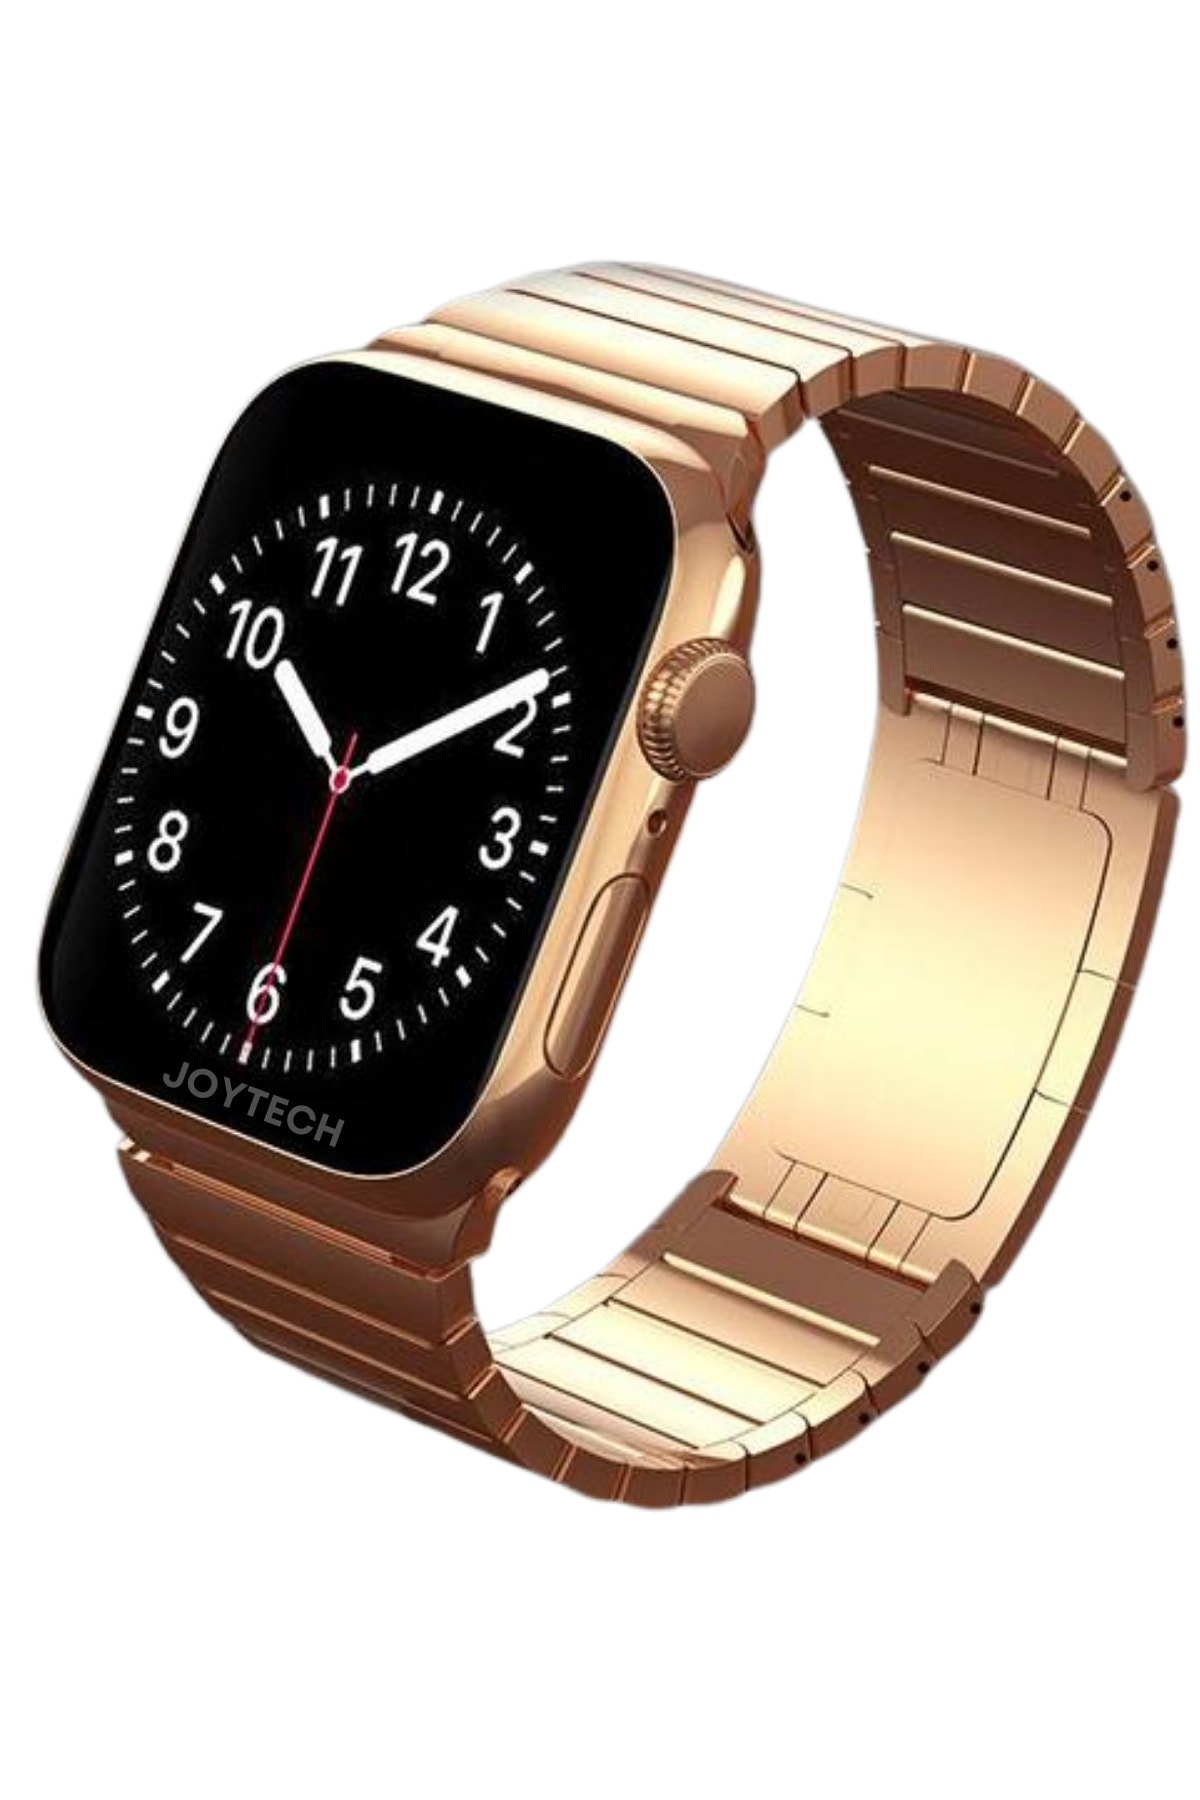 JOYTECH Watch 8 Ultra Uyumlu ordon Kilitli Bluetooth'lu Gps Nfc Siri Tüm Telefonlarla Uyumlu Türkçe Menü